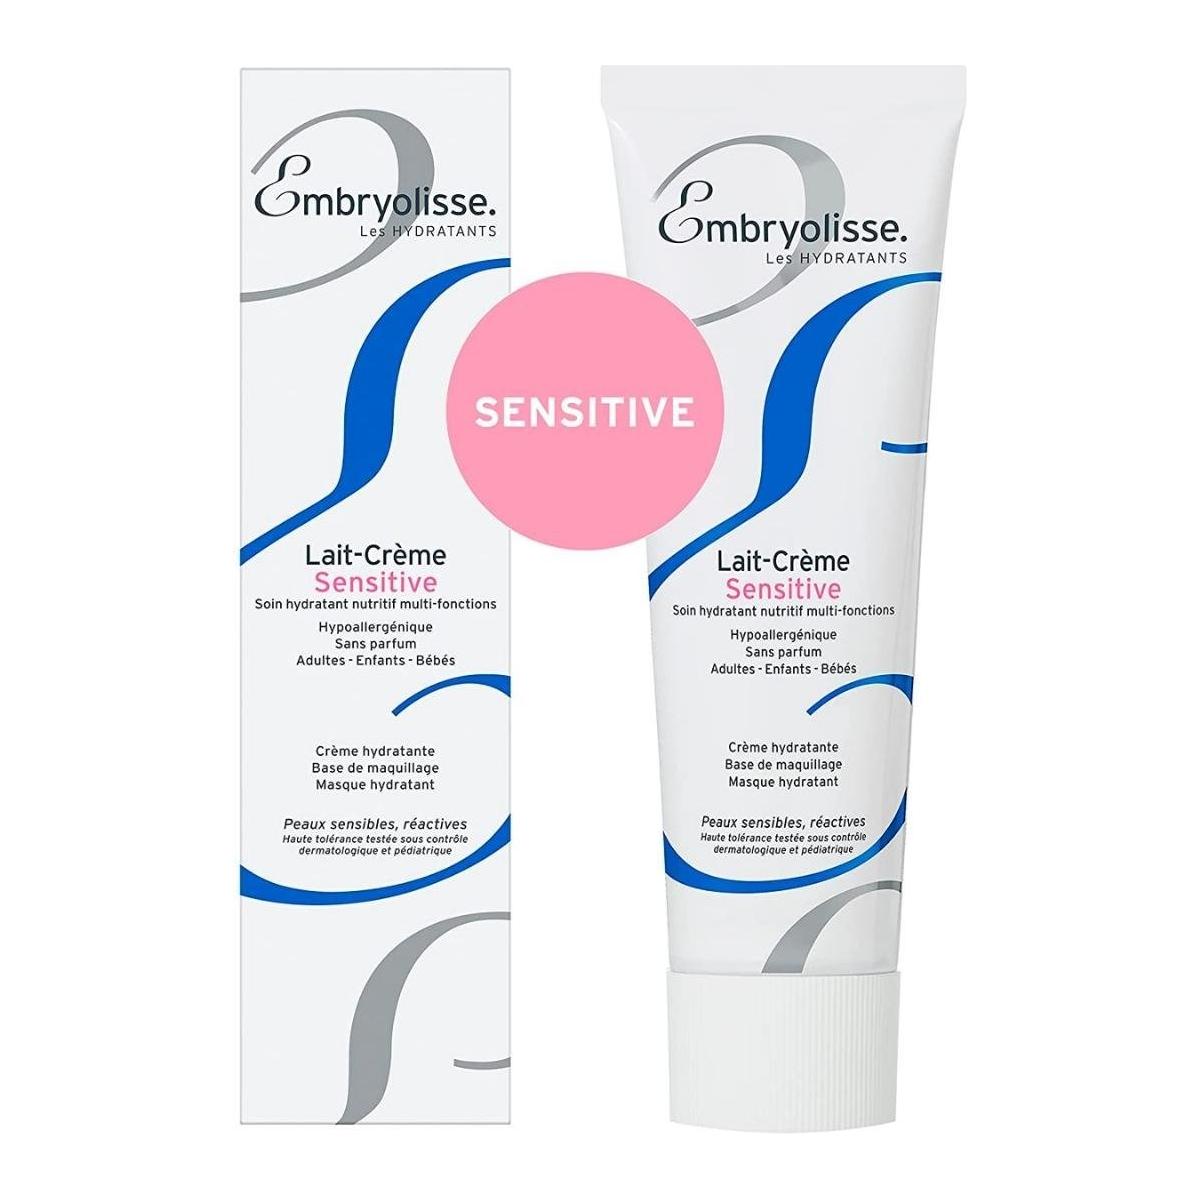 Embryolisse | Lait-Crème Sensitive | 100ml - DG International Ventures Limited